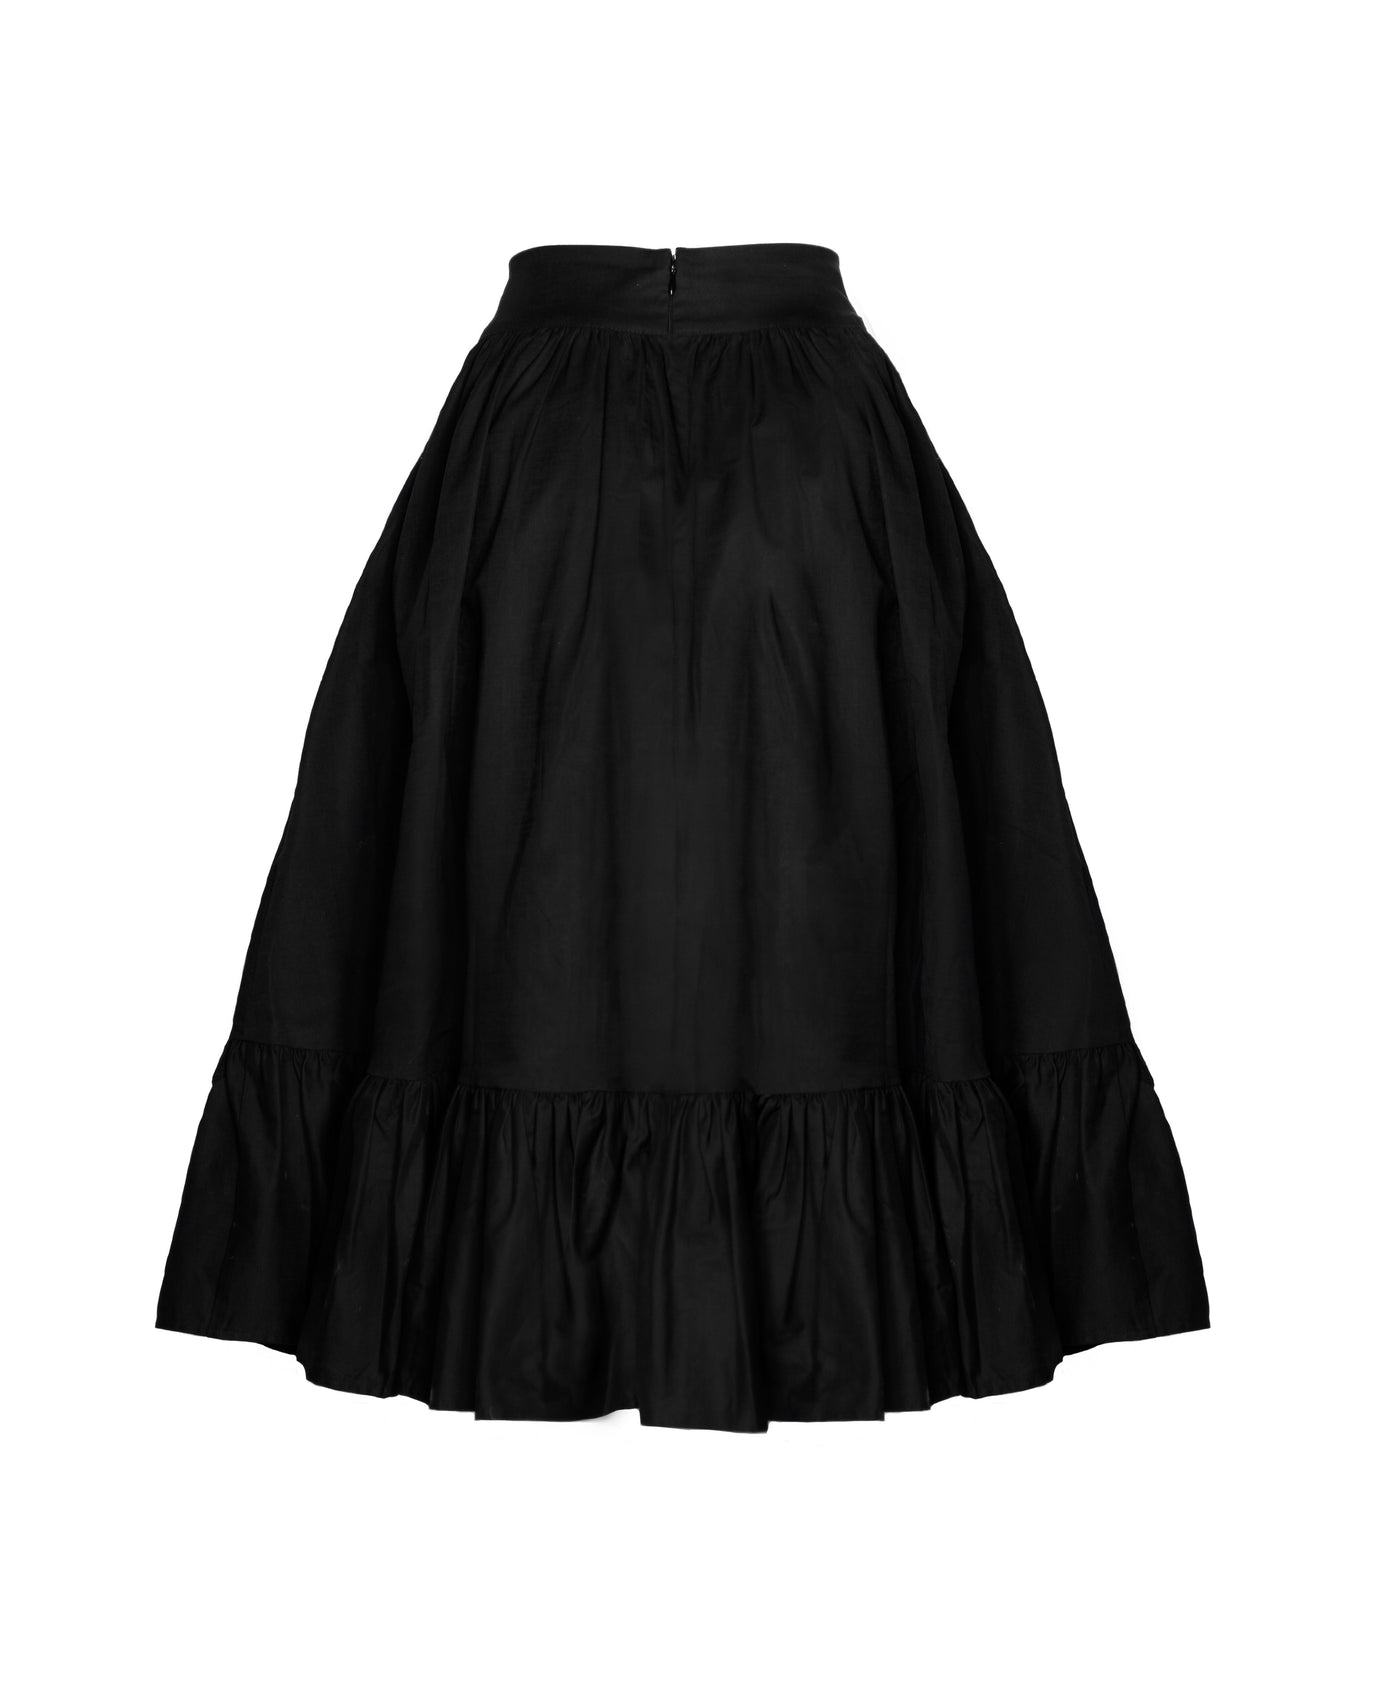 The Edith Skirt